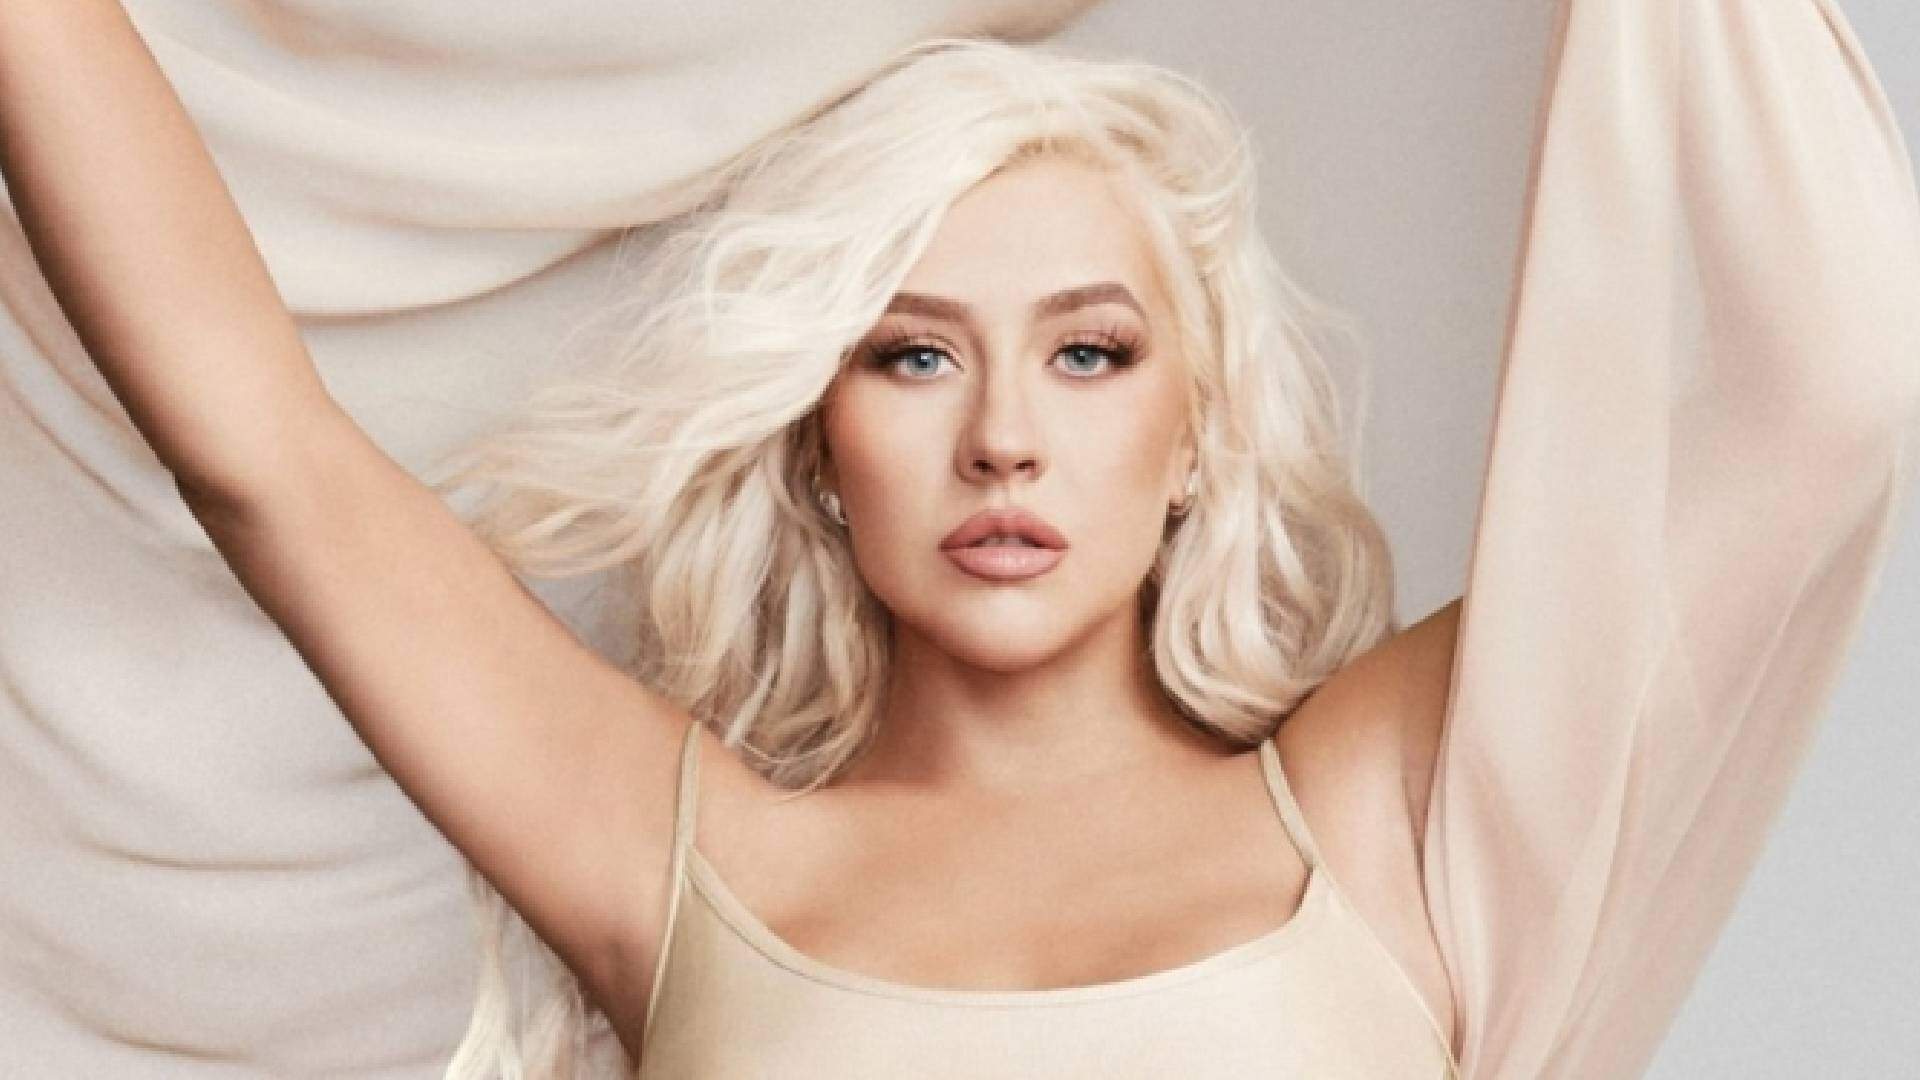 Após 20 anos, Christina Aguilera lança nova versão do clipe de “Beautiful” e emociona web - Metropolitana FM